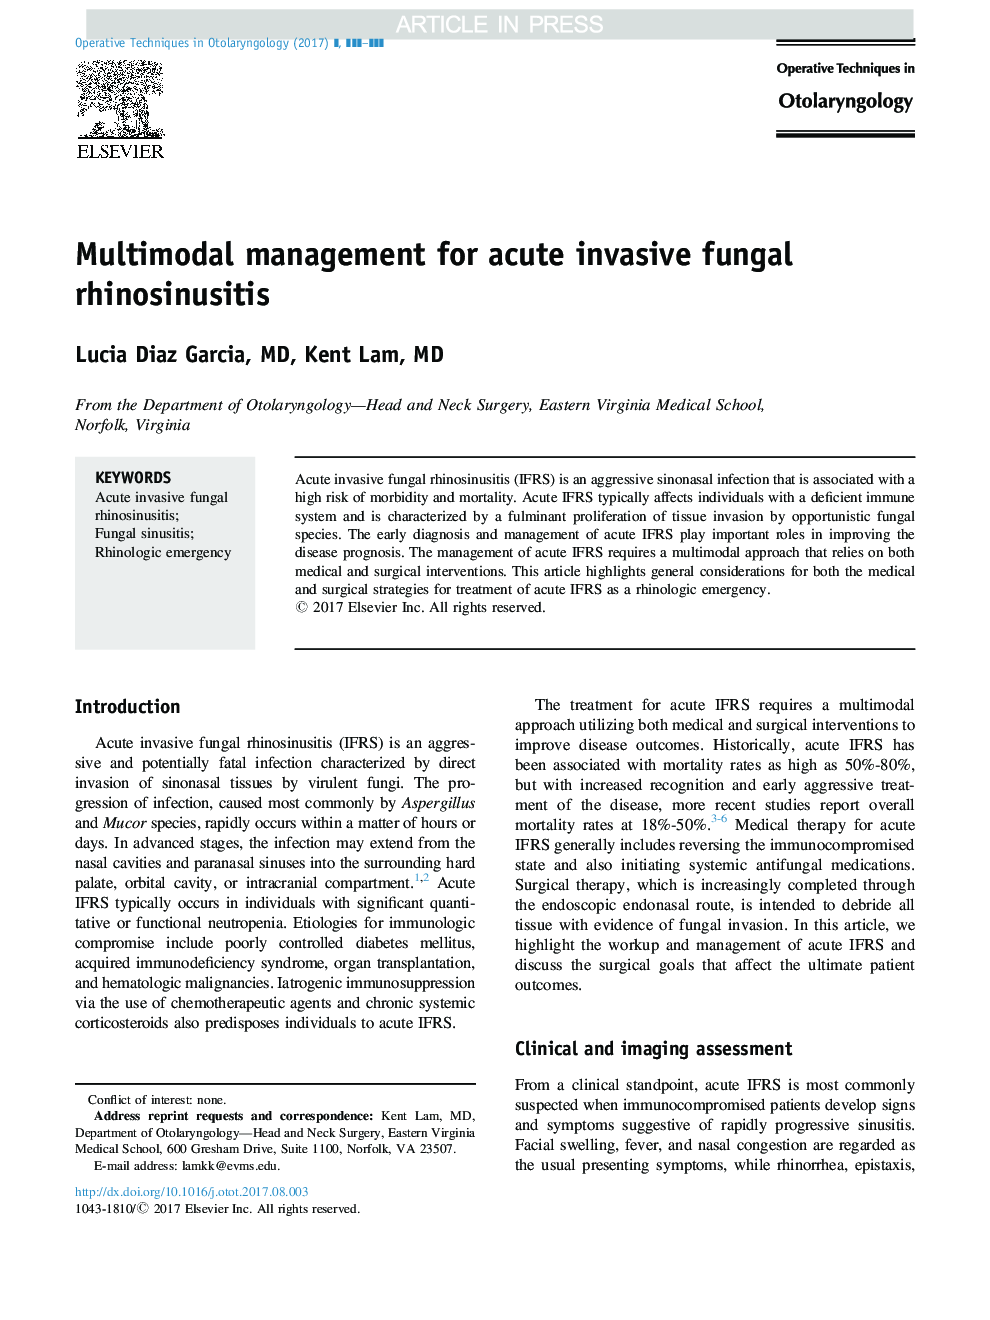 Multimodal management for acute invasive fungal rhinosinusitis